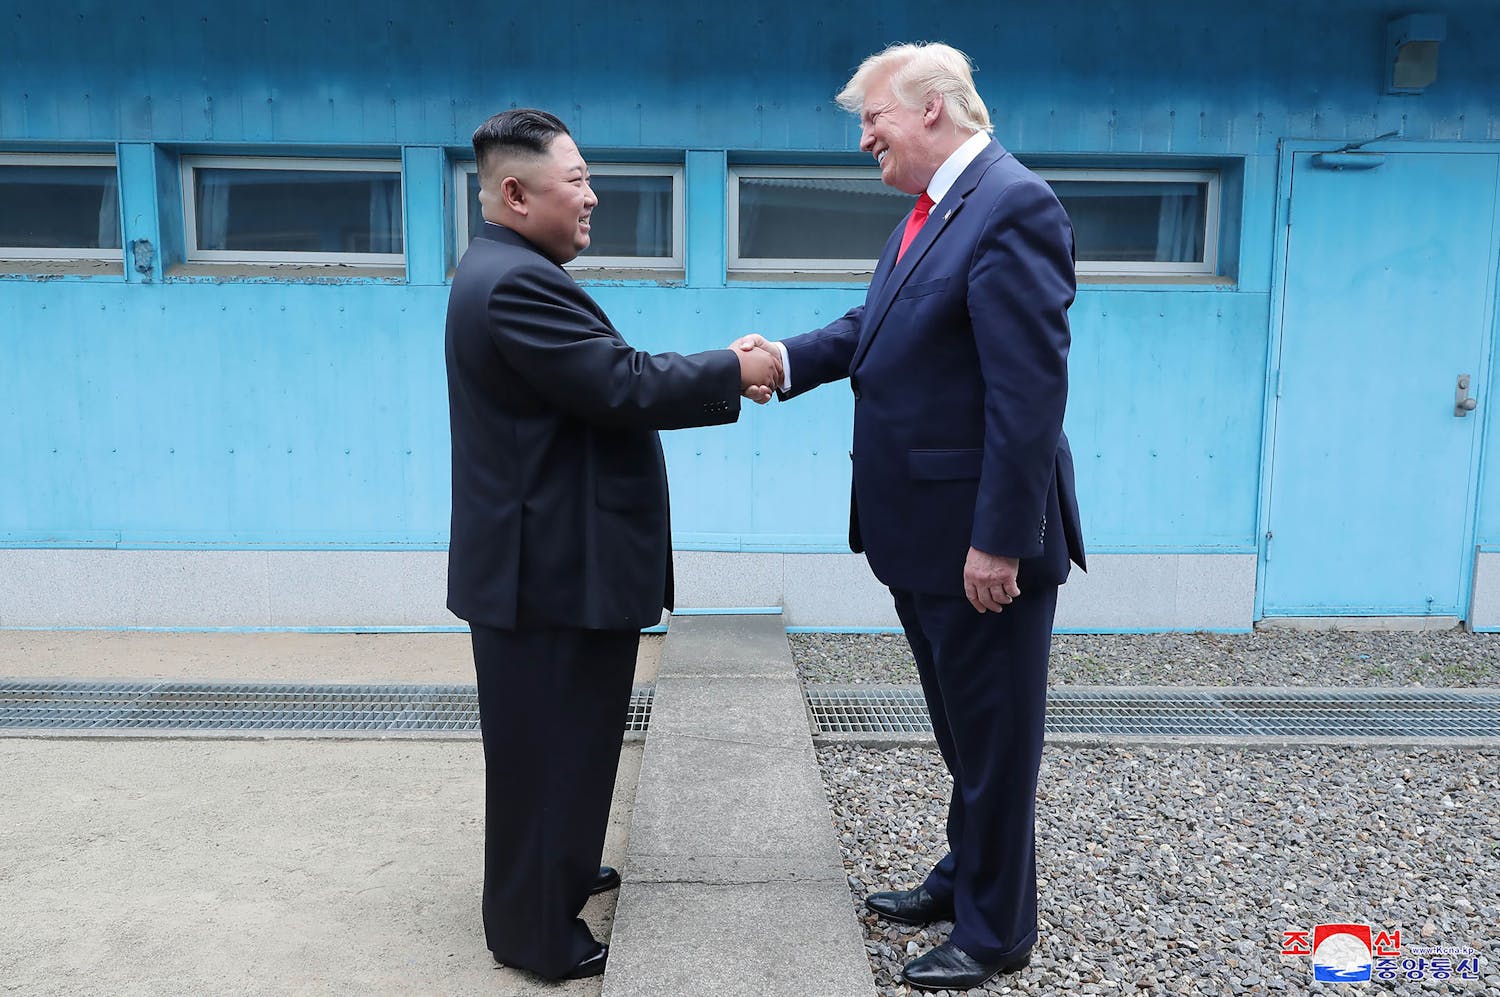 Staatsmedia Noord-Korea wijzen Trump af: ‘Kan ons niks schelen’